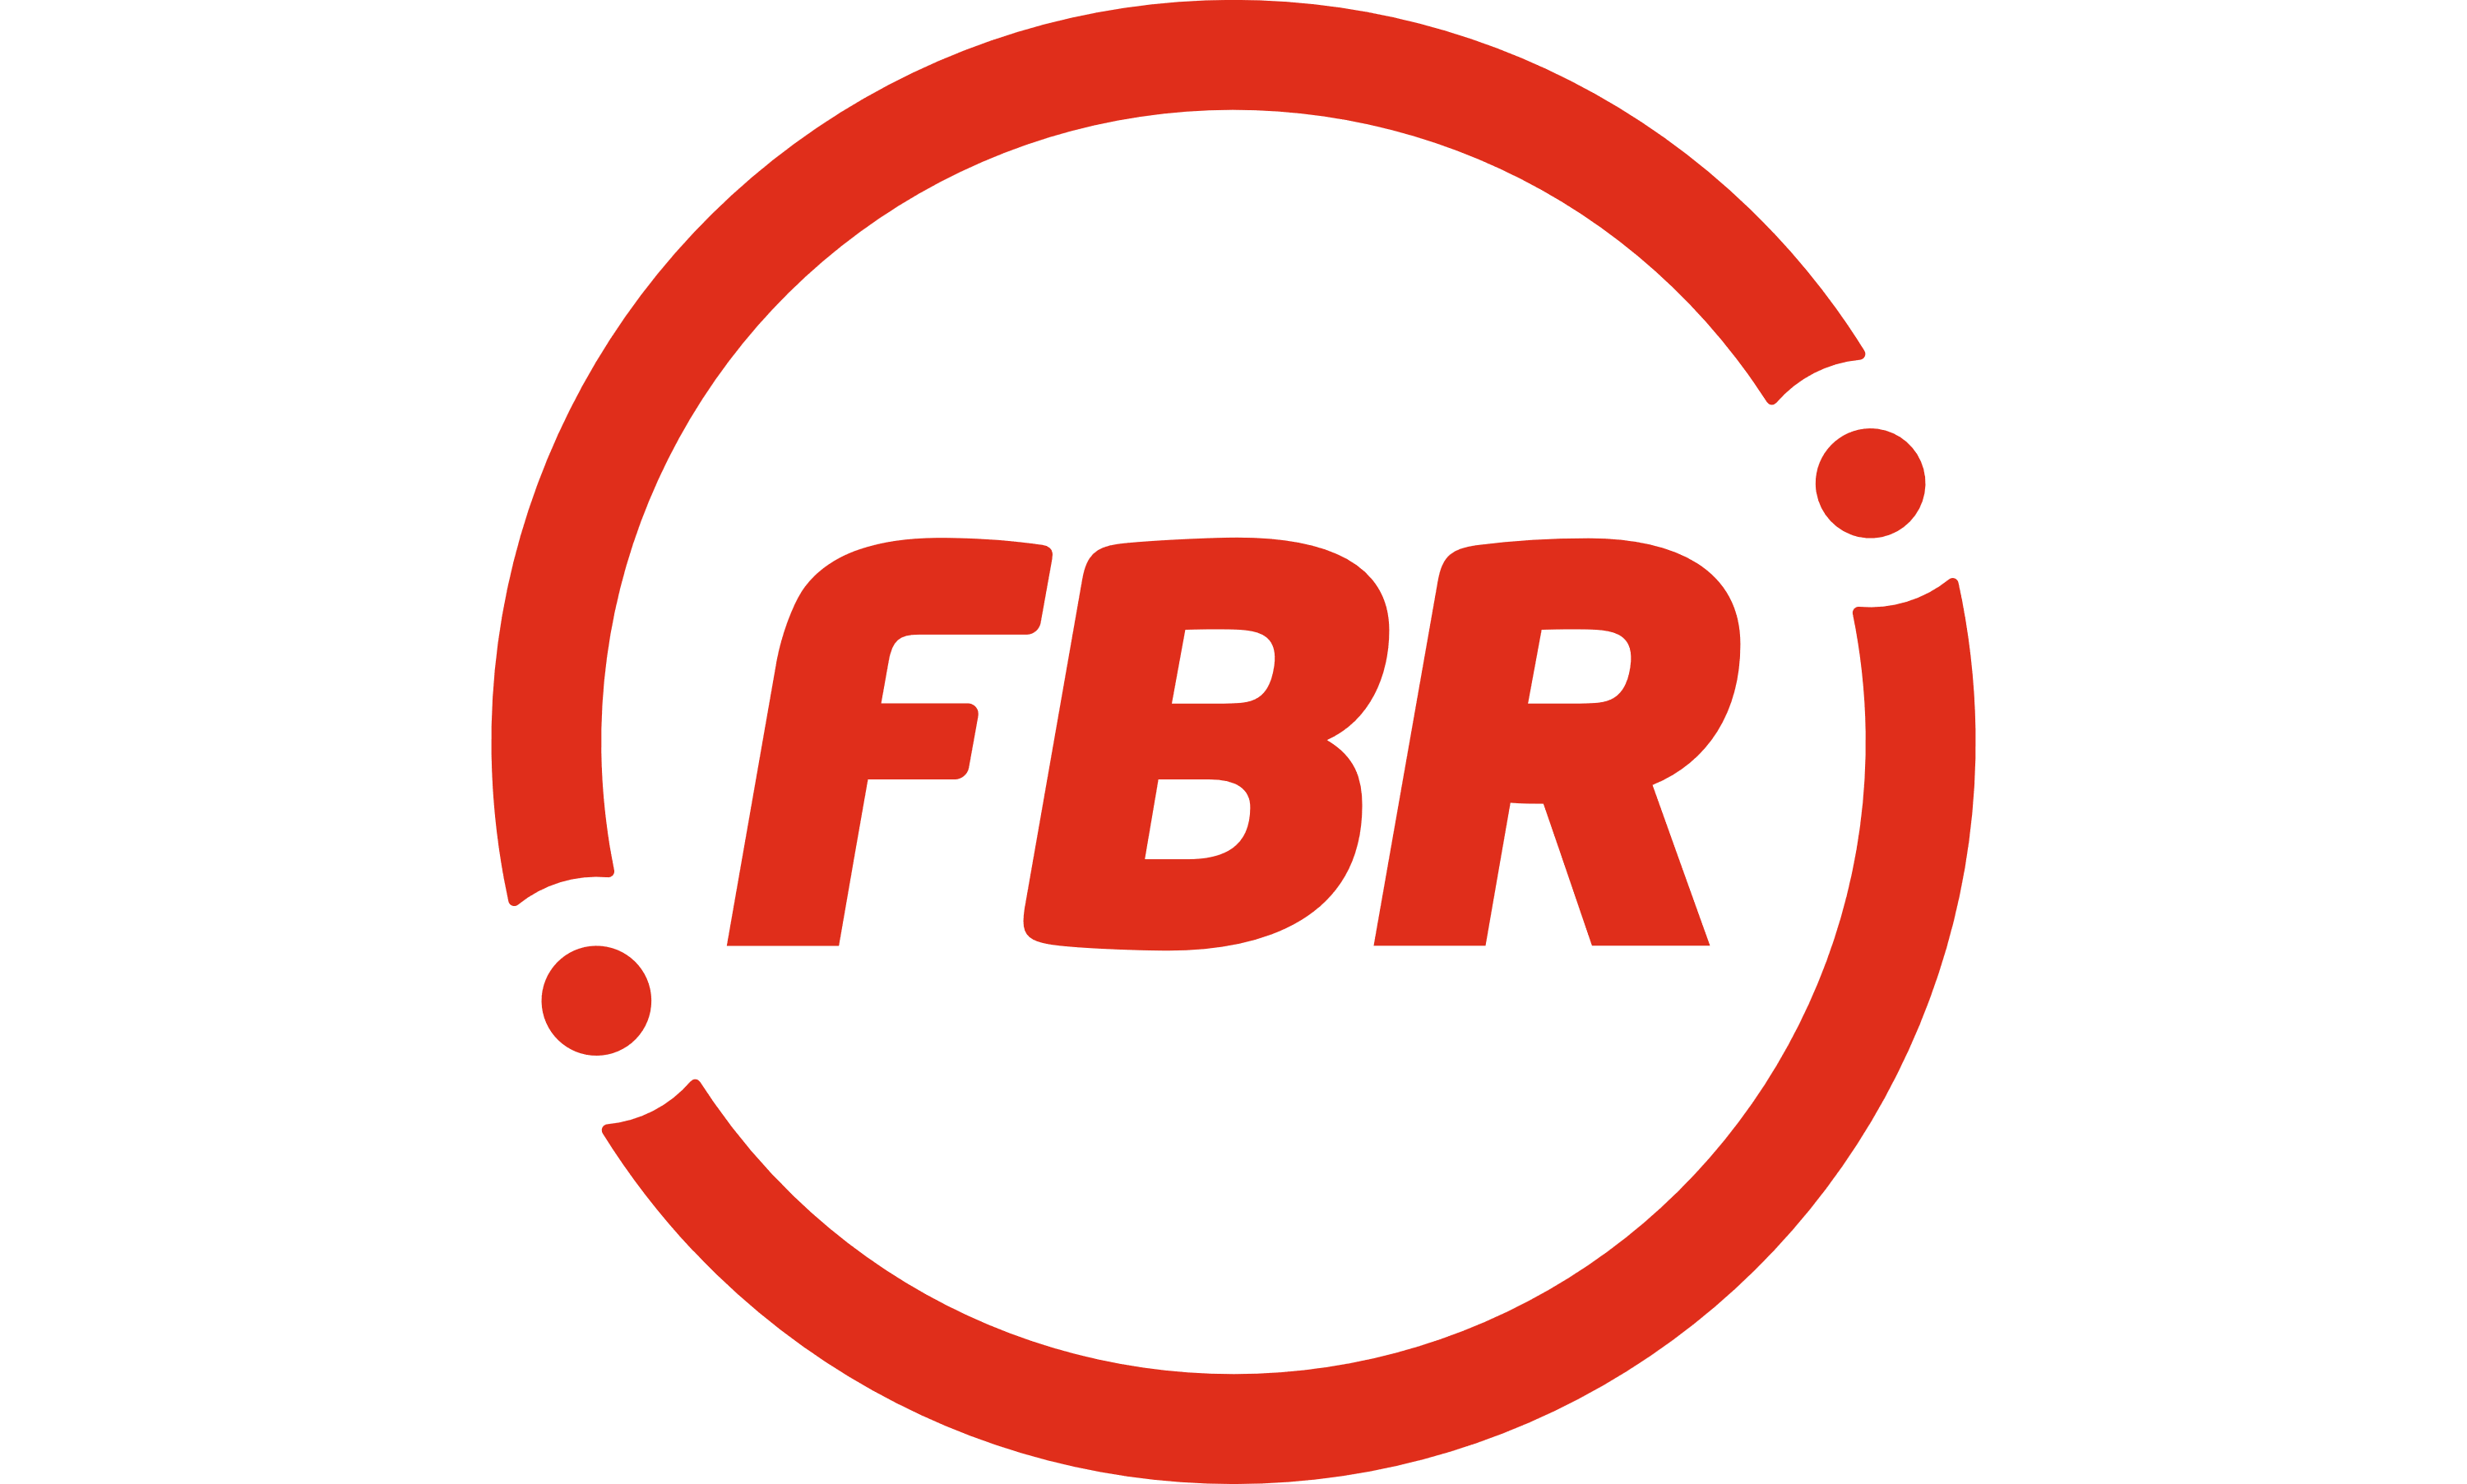 FBR Ltd Logo